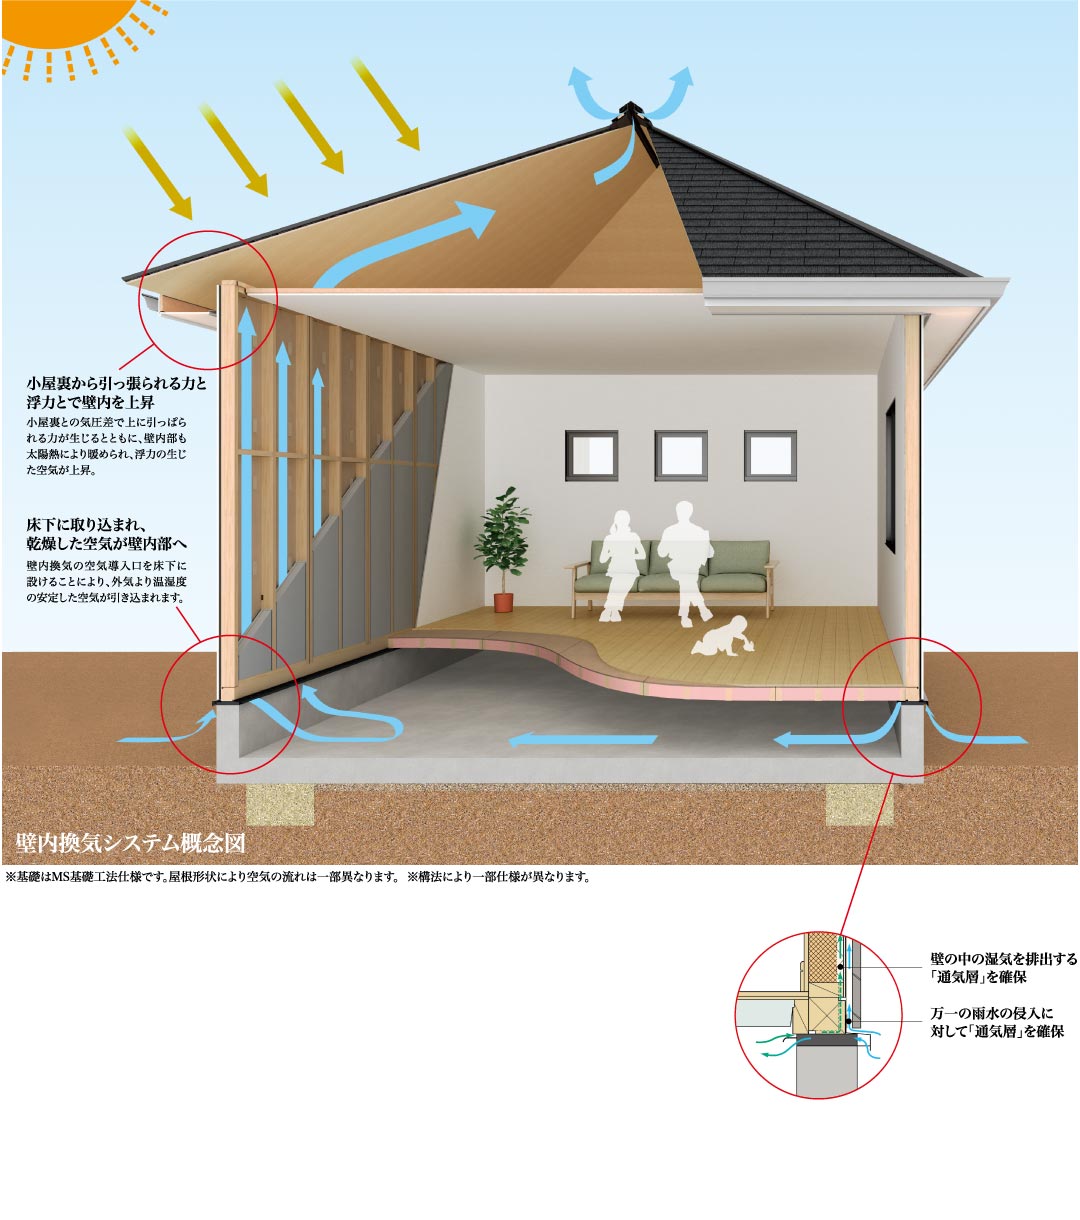 内部結露を追放する壁内換気システム概念図 ※基礎はMS基礎工法仕様です。屋根形状により空気の流れは一部異なります。　※構法により一部使用が異なります。